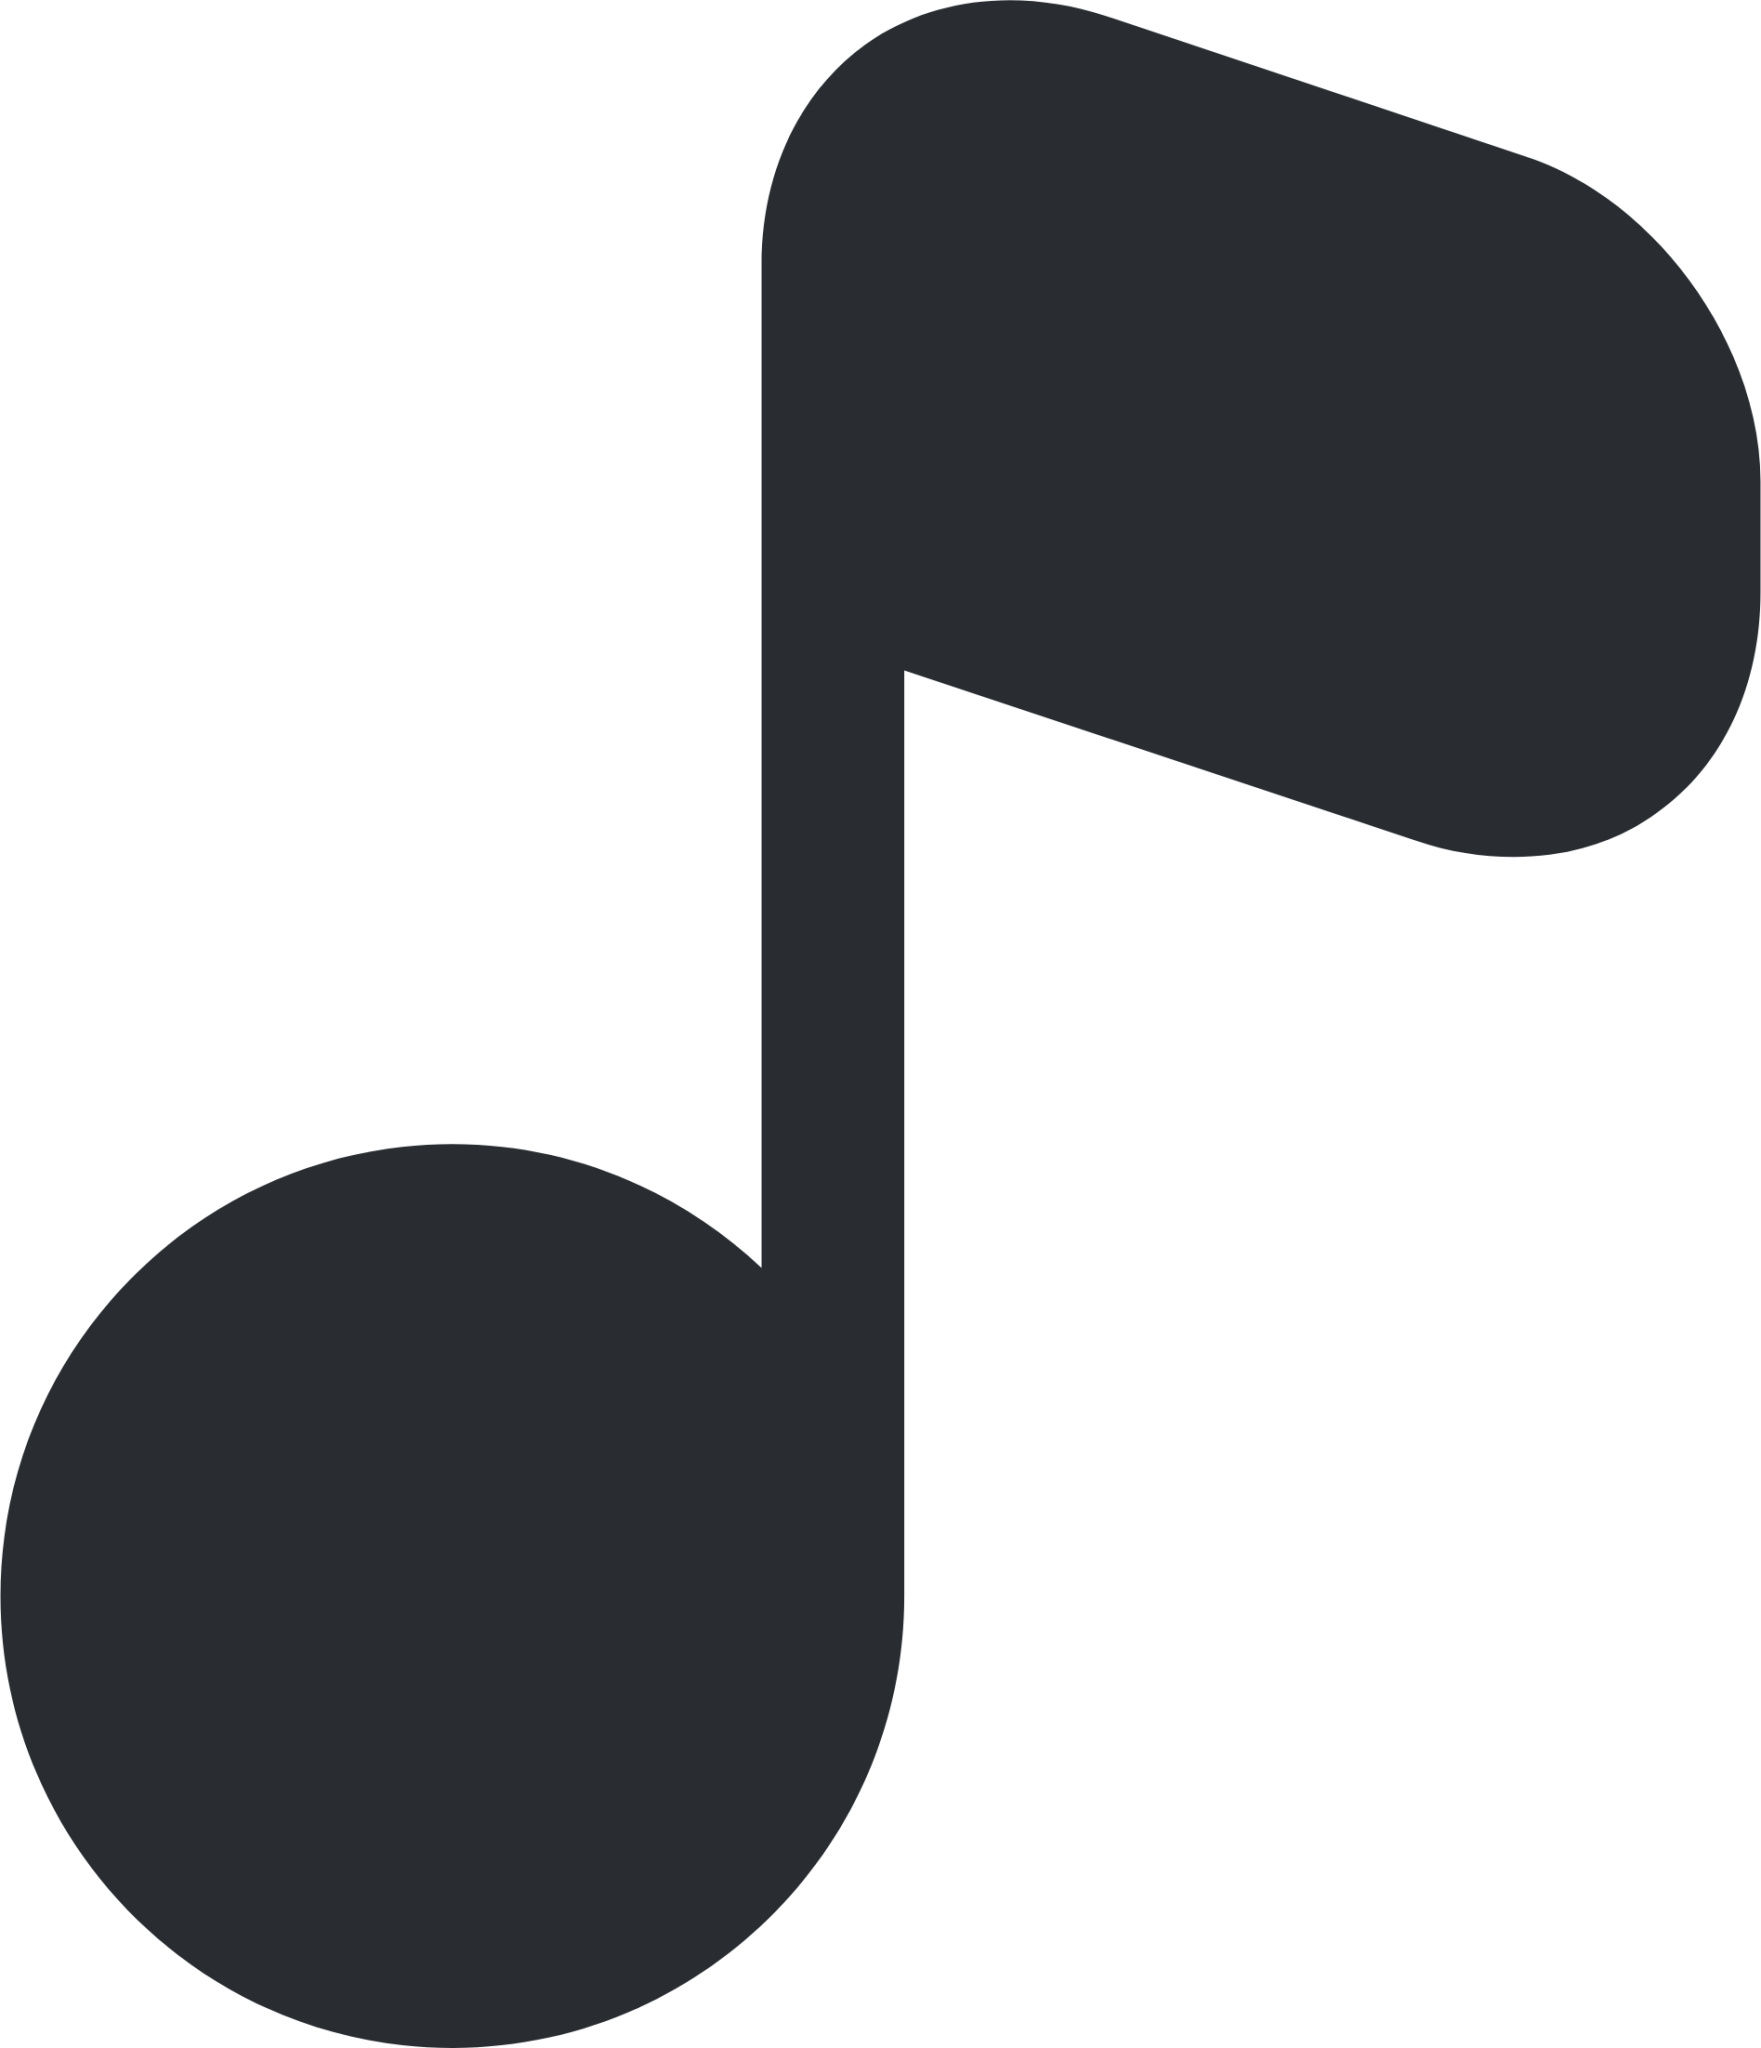 musicnote icon